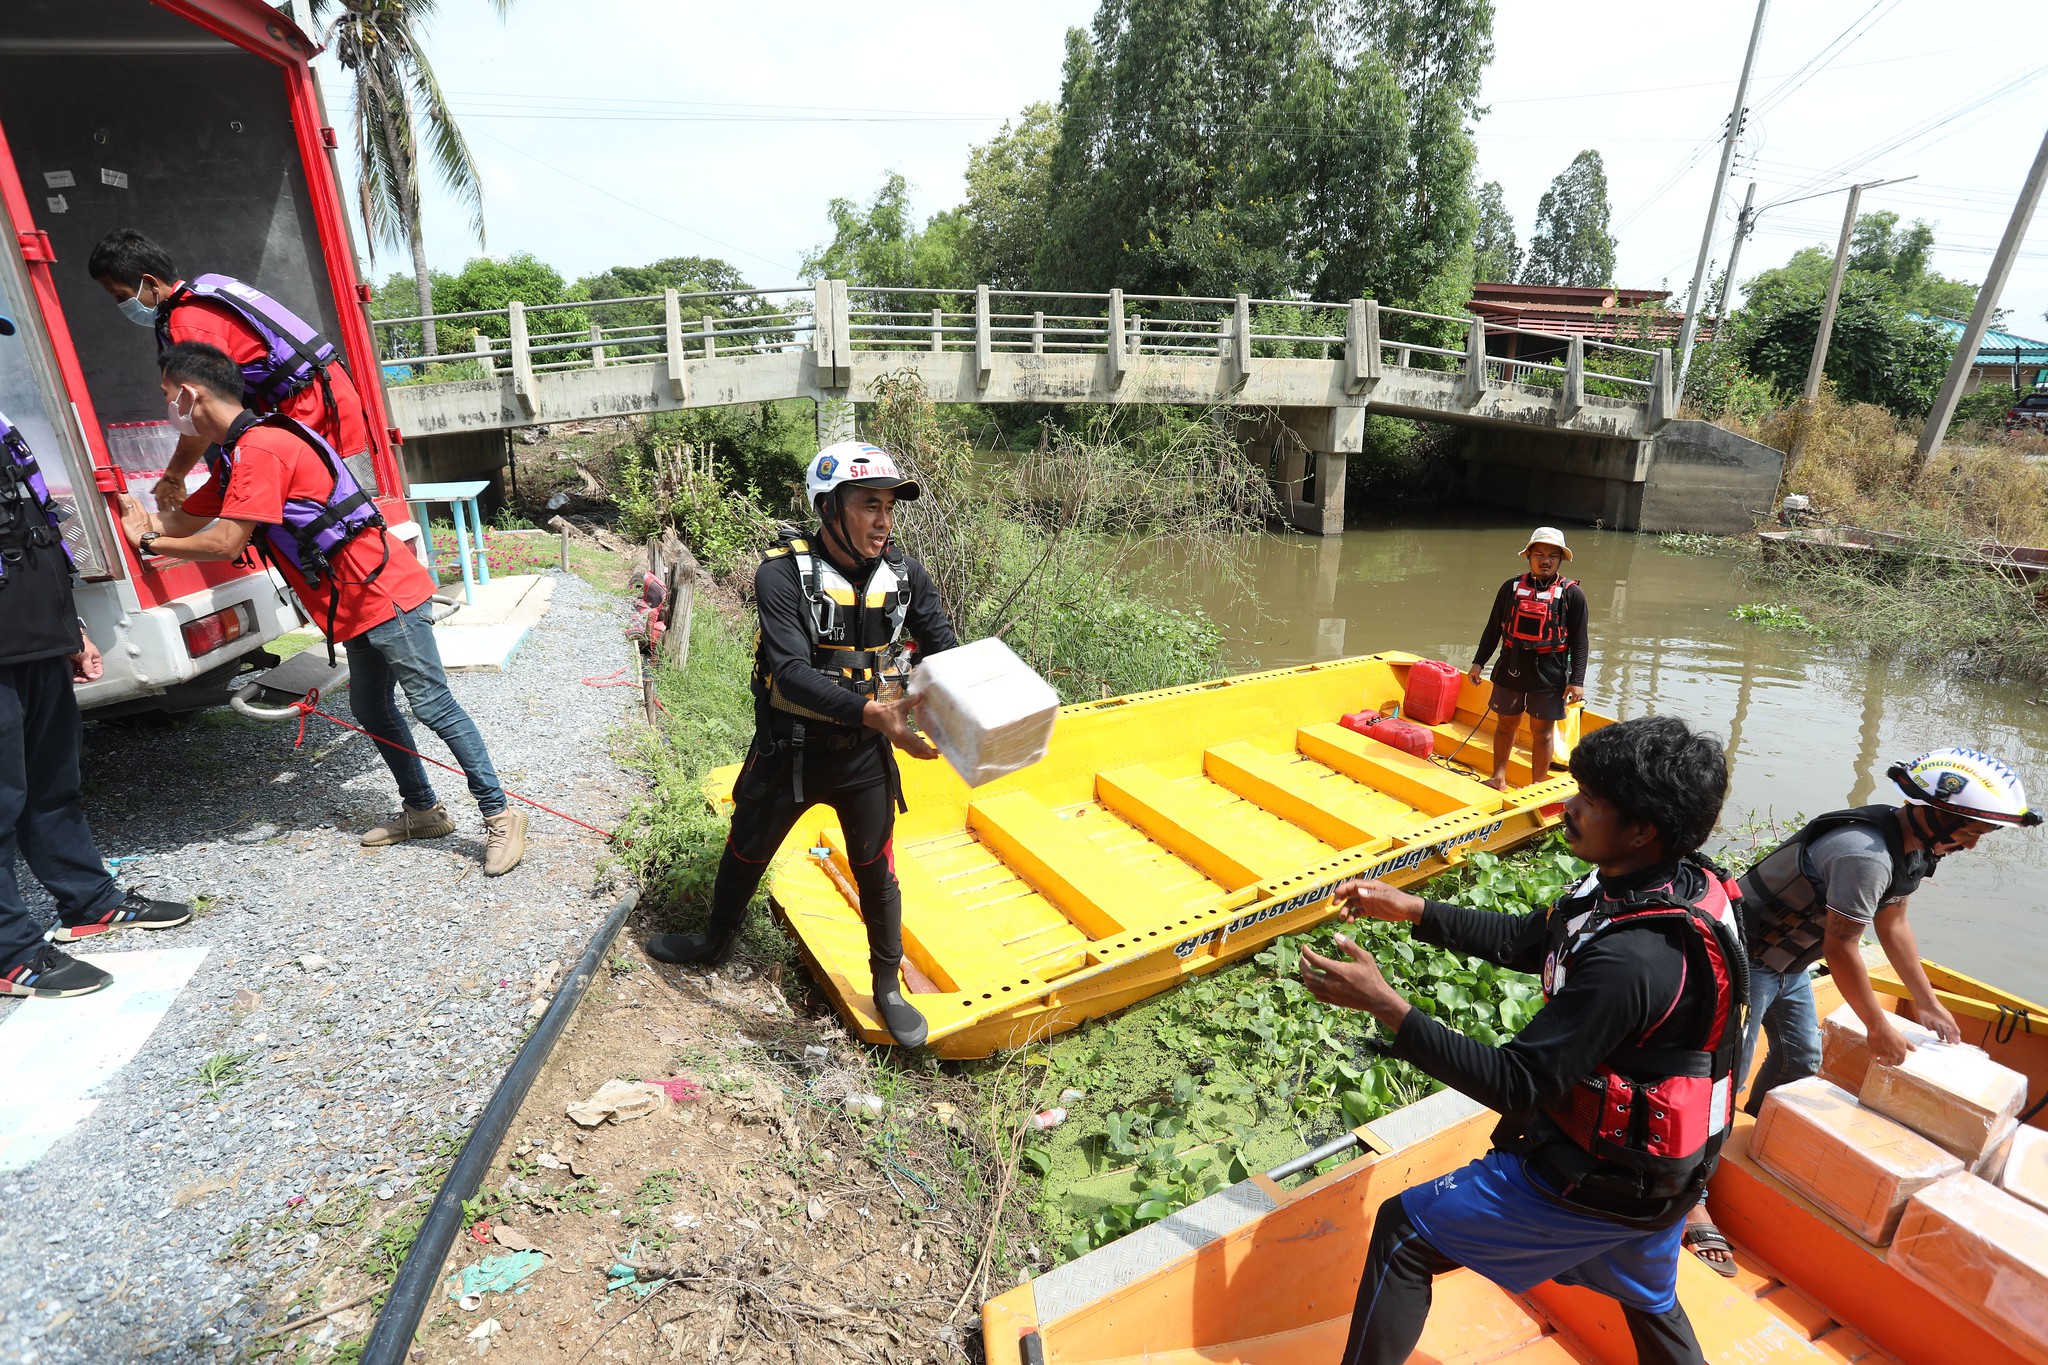 สปสช. จับมือไปรษณีย์ไทย จัดส่งน้ำยาล้างไตถึงบ้านในพื้นที่อุทกภัย | ประชาไท Prachatai.com